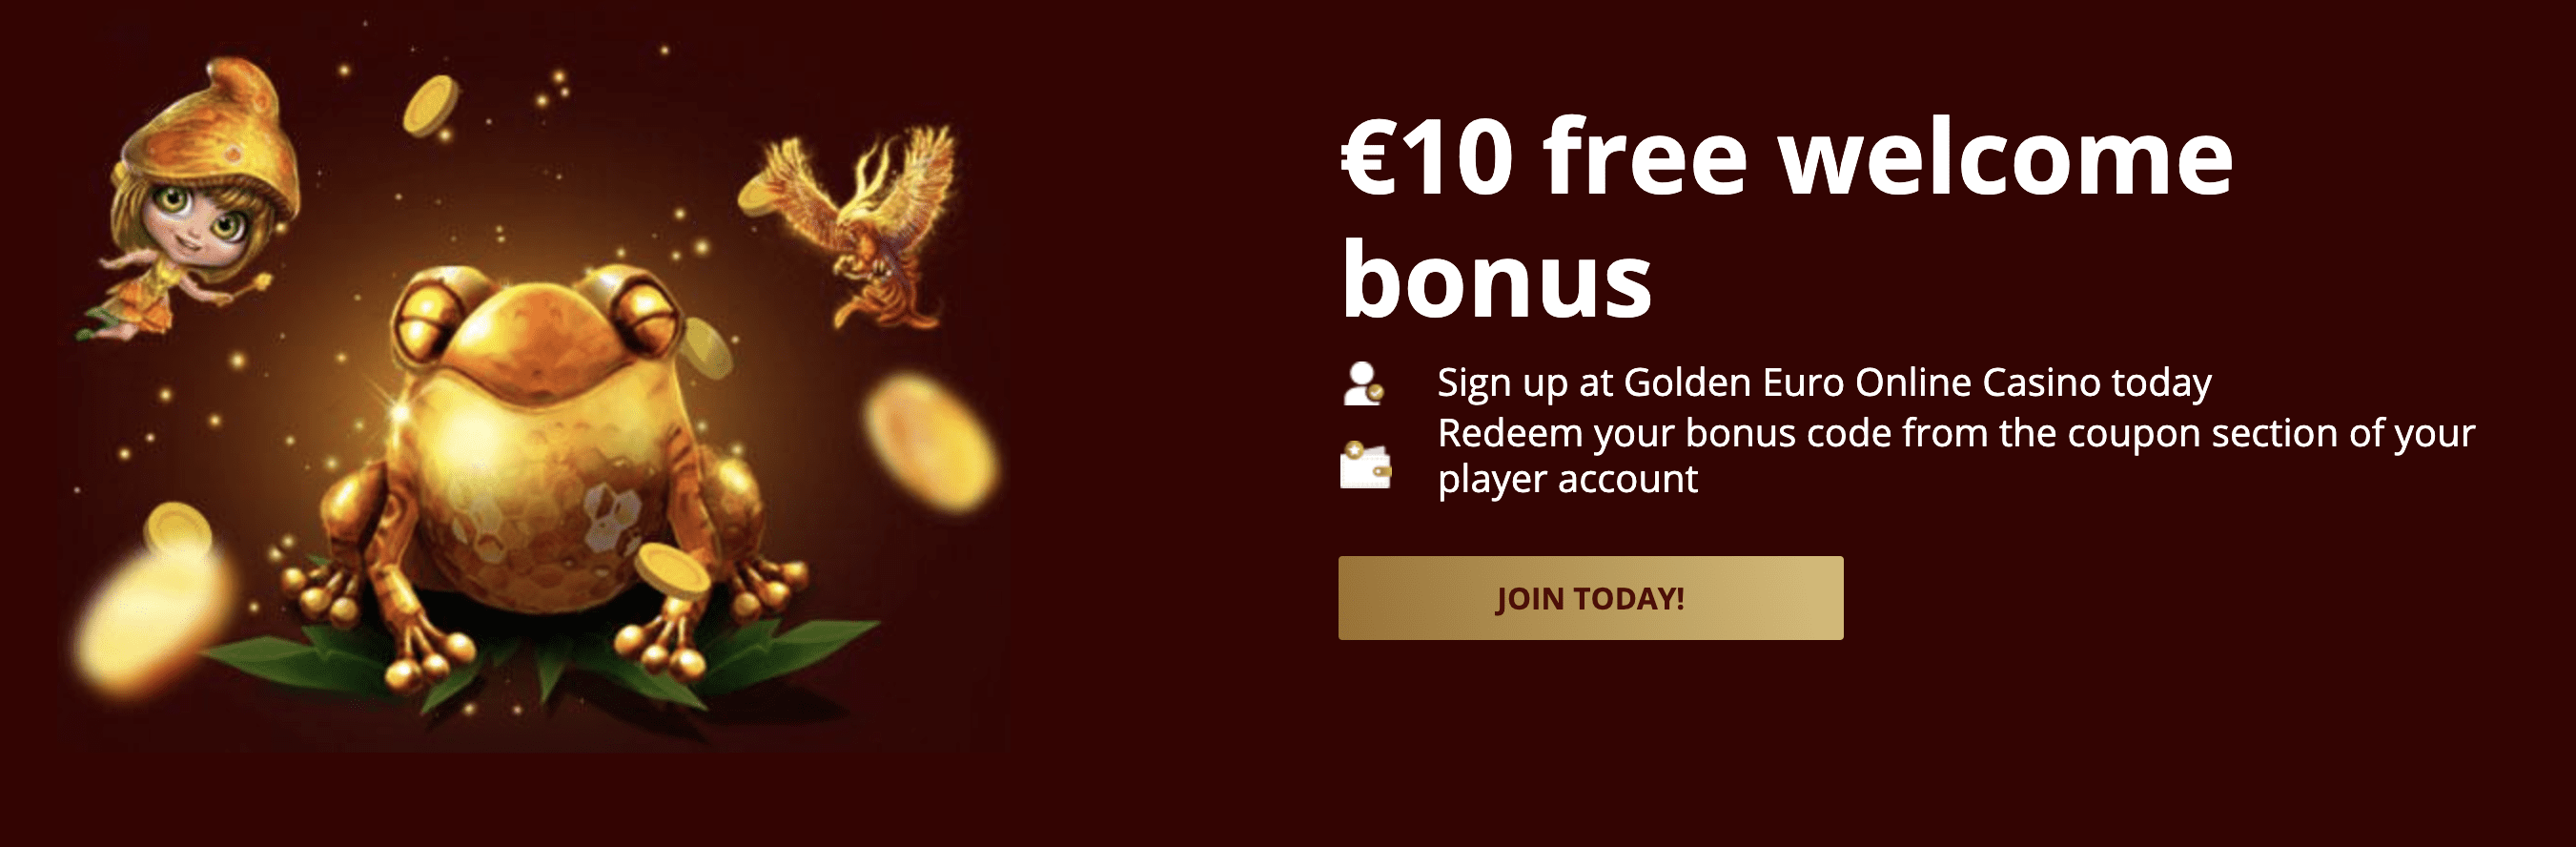 golden euro bonus utan krav på insättning